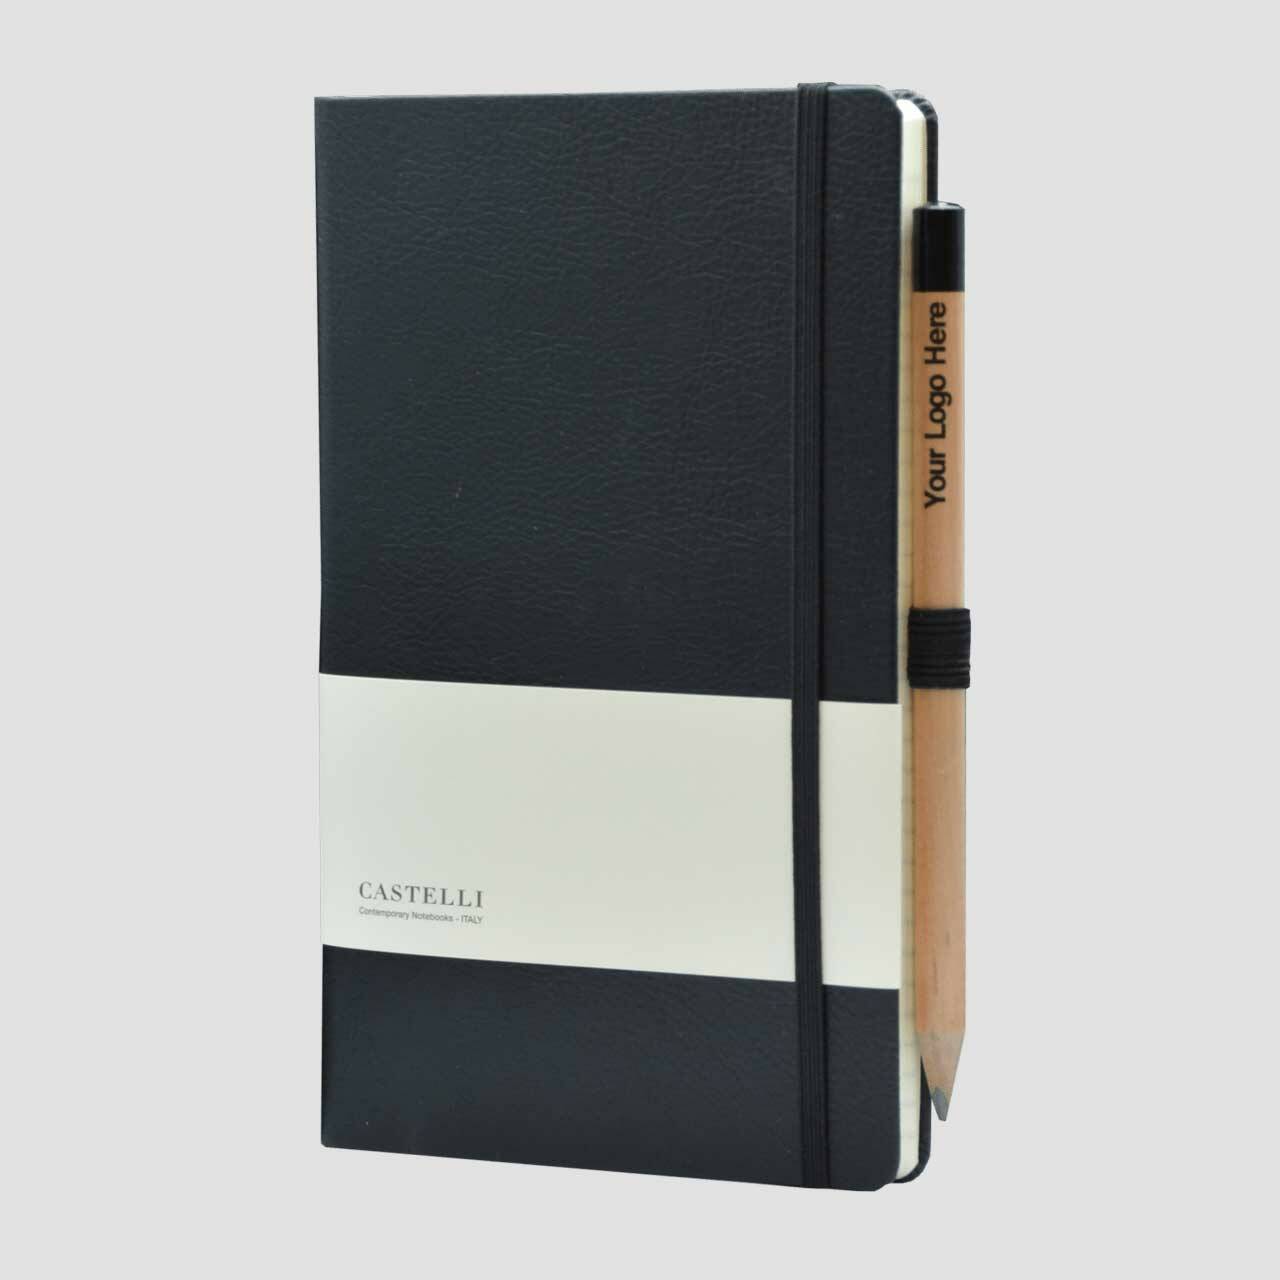 Castelli notitieboek lederlook met banderol en potlood met houder, zwart